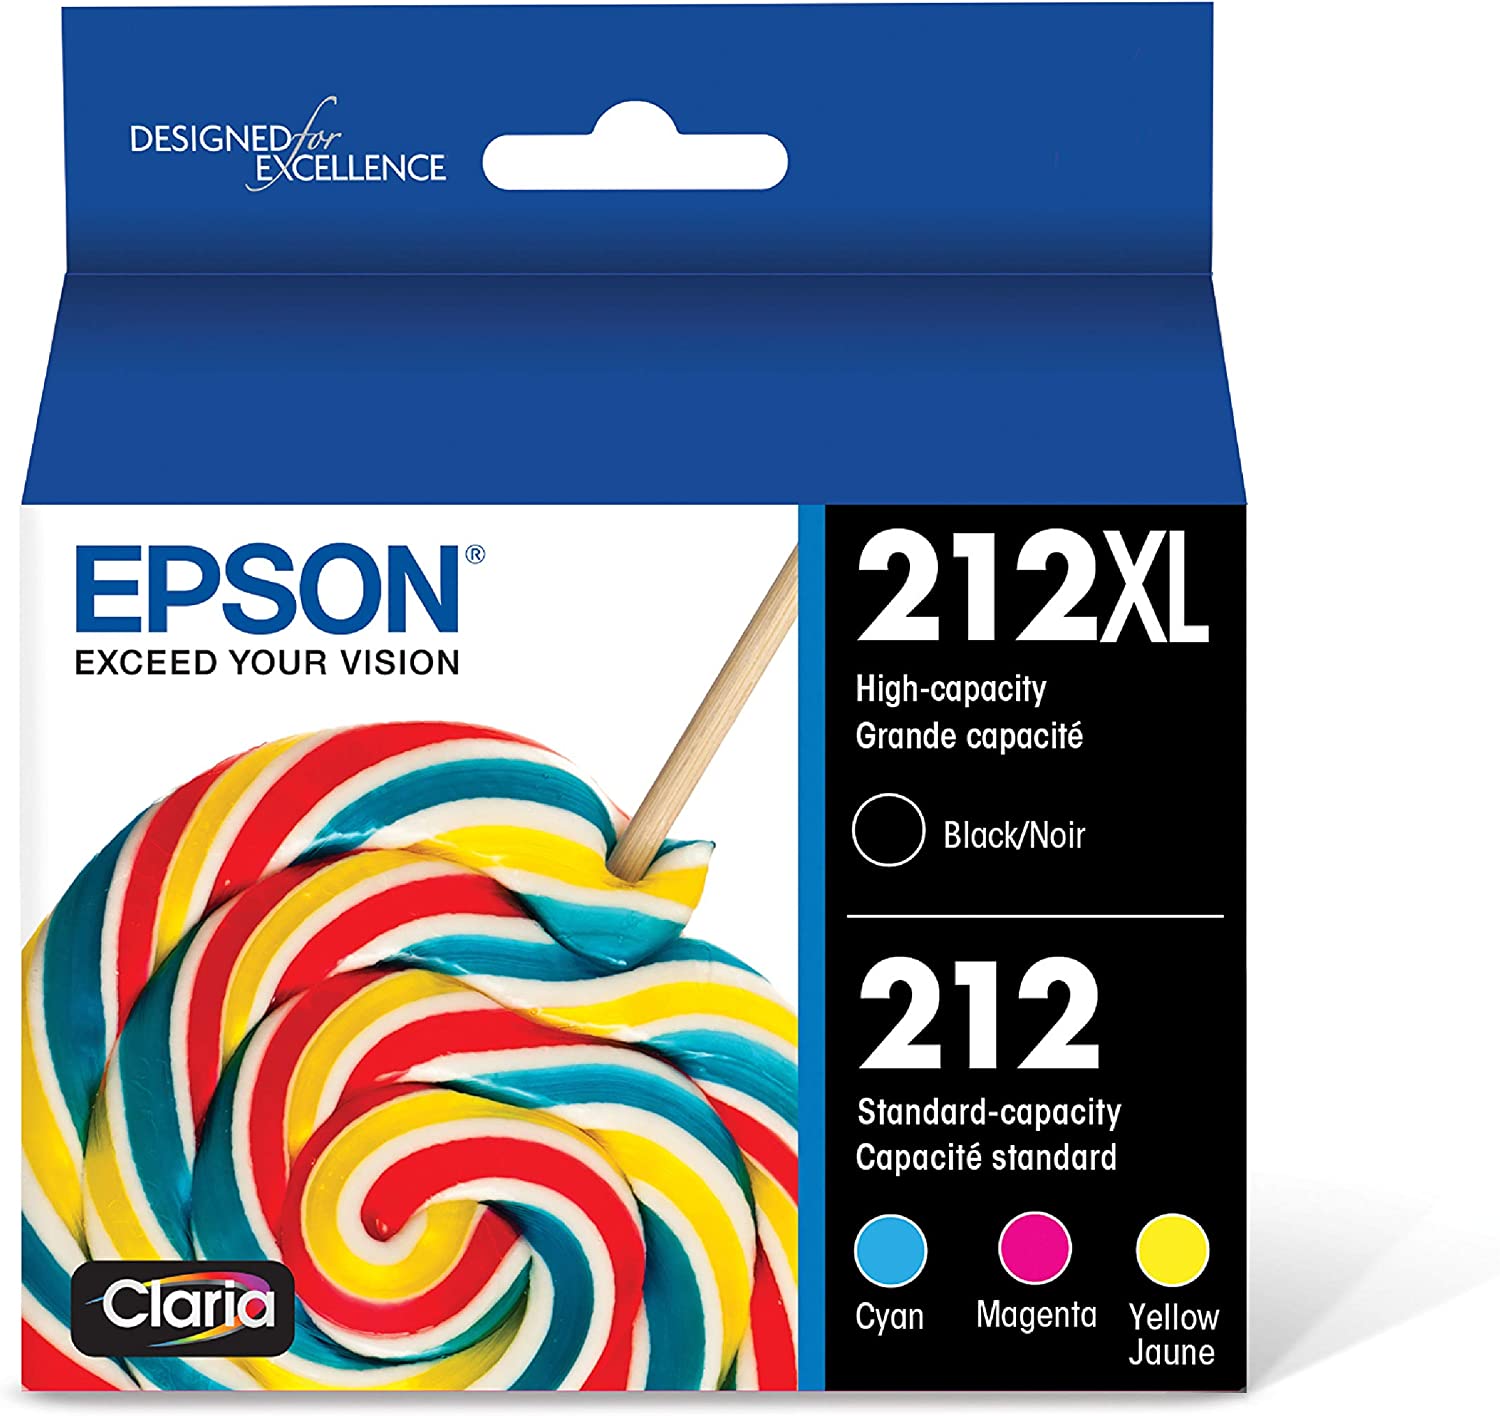 EPSON T212 Claria - 잉크 대용량 블랙 & 스탠다드 컬러 - 엡손 익스프레션 및 워크포스 프린터를 위한 카트리지 콤보 팩 (T212XL-BCS)